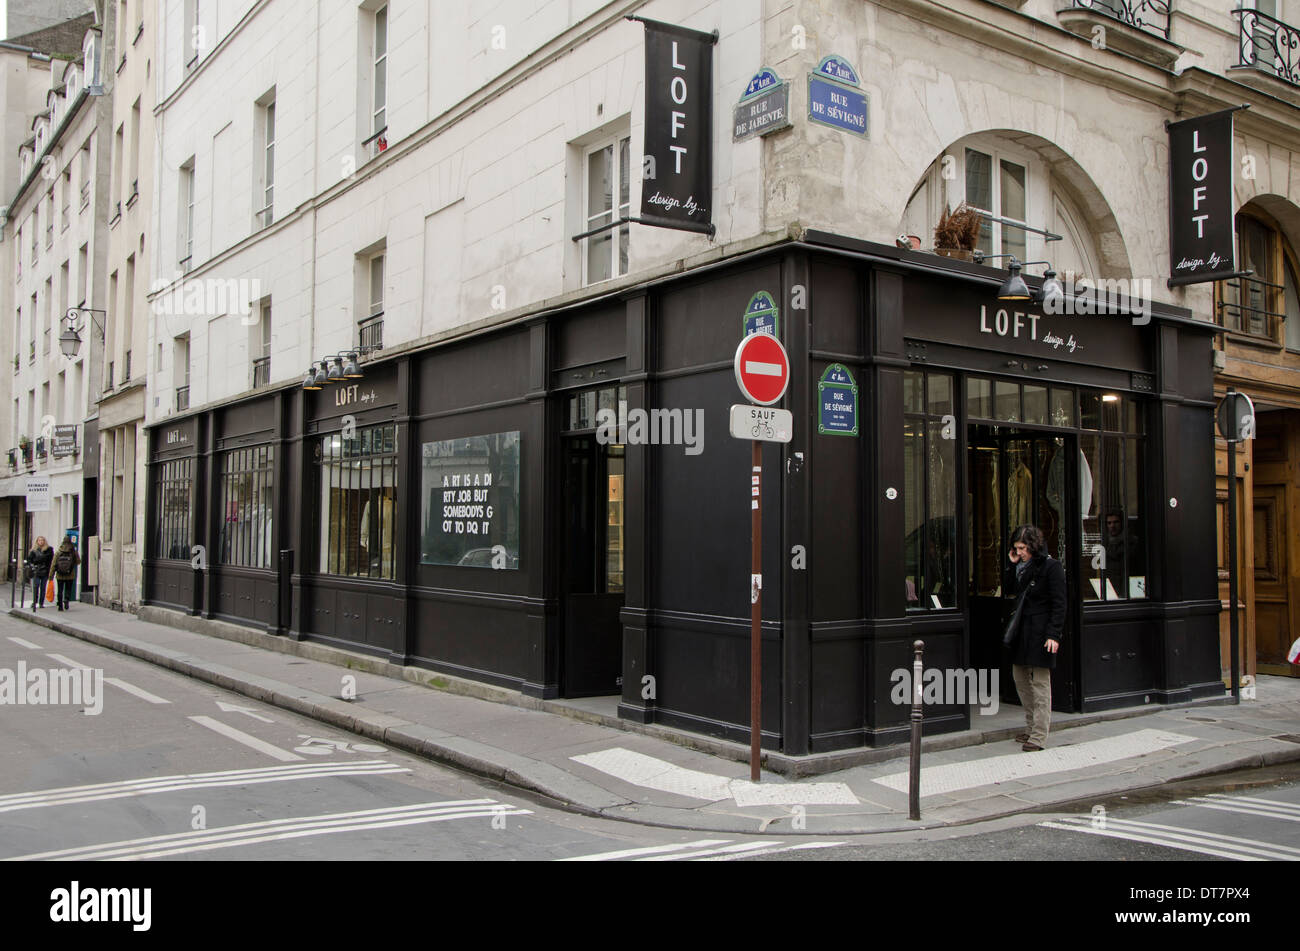 Loft shop abbigliamento uomo e donna negozio interno con magliette su display, Paris, Francia. Foto Stock